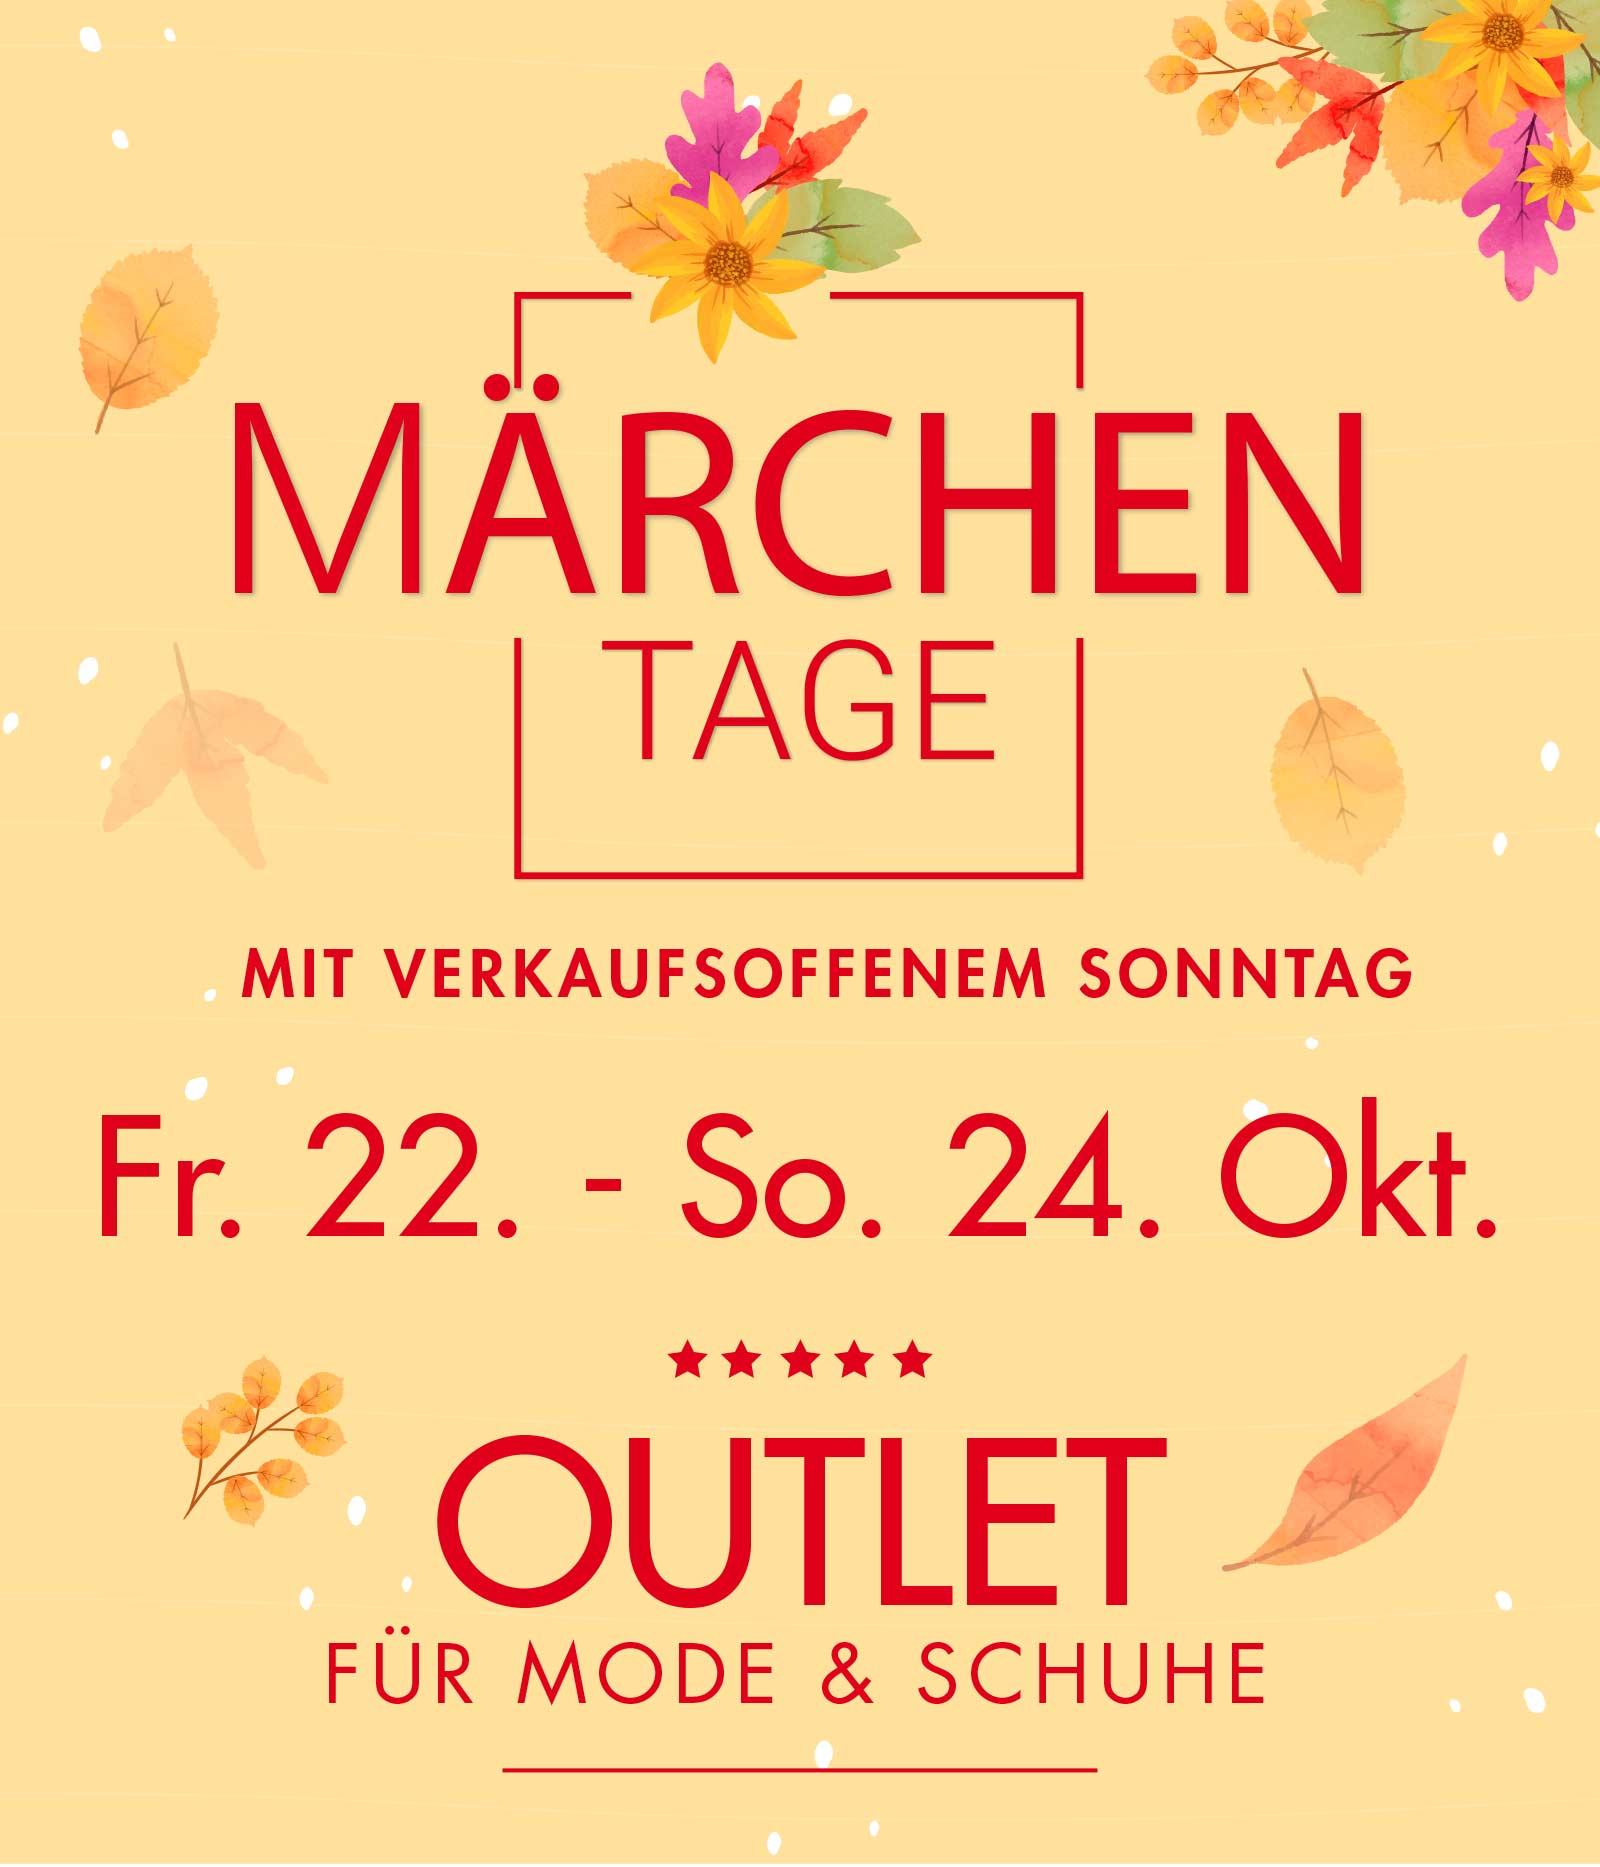 Märchentage in Bad Säckingenvom 22.-24. Oktober | Outlet für Mode & Schuhe bei Ulli S. mit tollen Marken-Schnäppchen  und attraktiven Used Artikeln